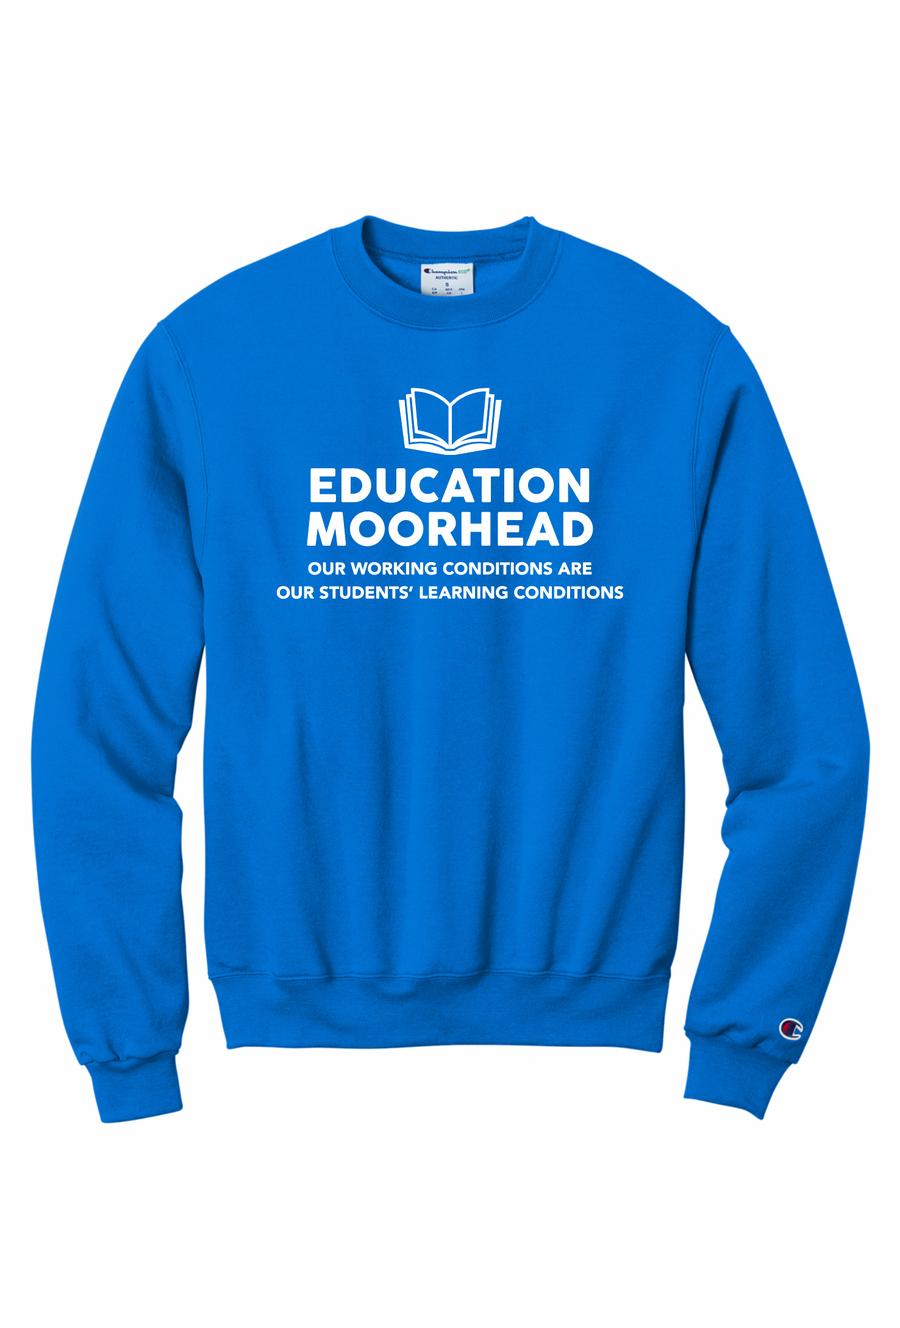 Ed MN Moorhead Crewneck Sweatshirt (23-Preorder) S6000